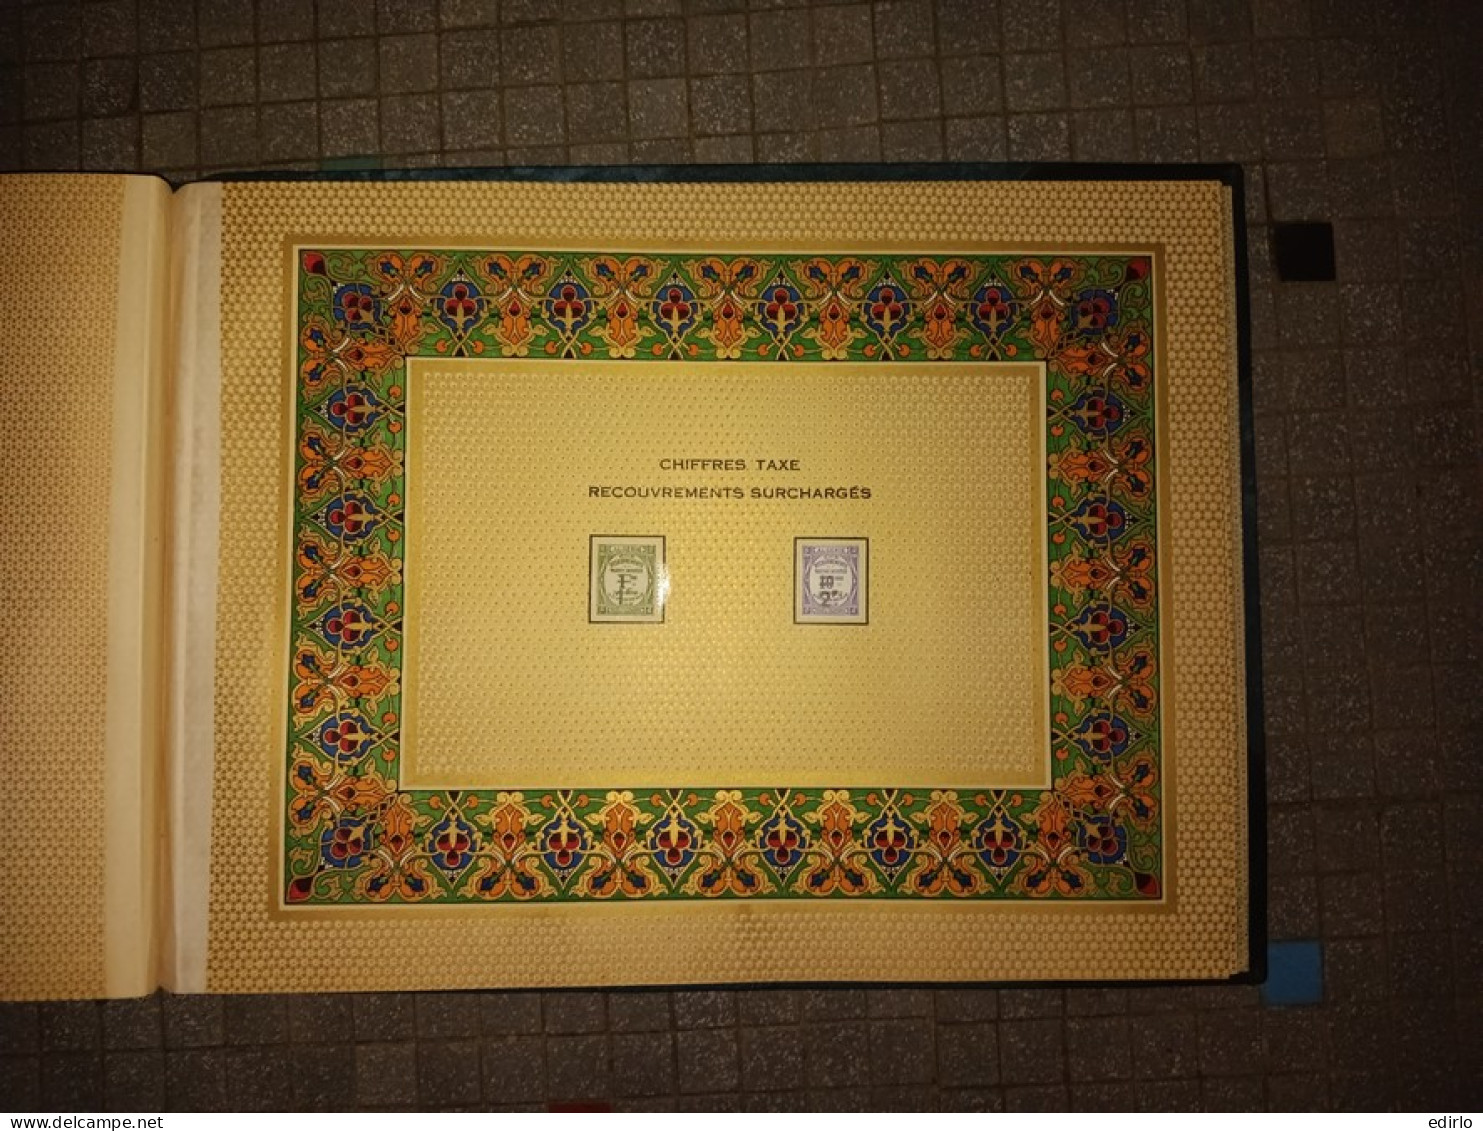 /// RARISSIME 155 EXEMPLAIRES ///  Album avec les timbres d'Algérie neufs avant commémoration du CENTENAIRE de l'ALGERIE